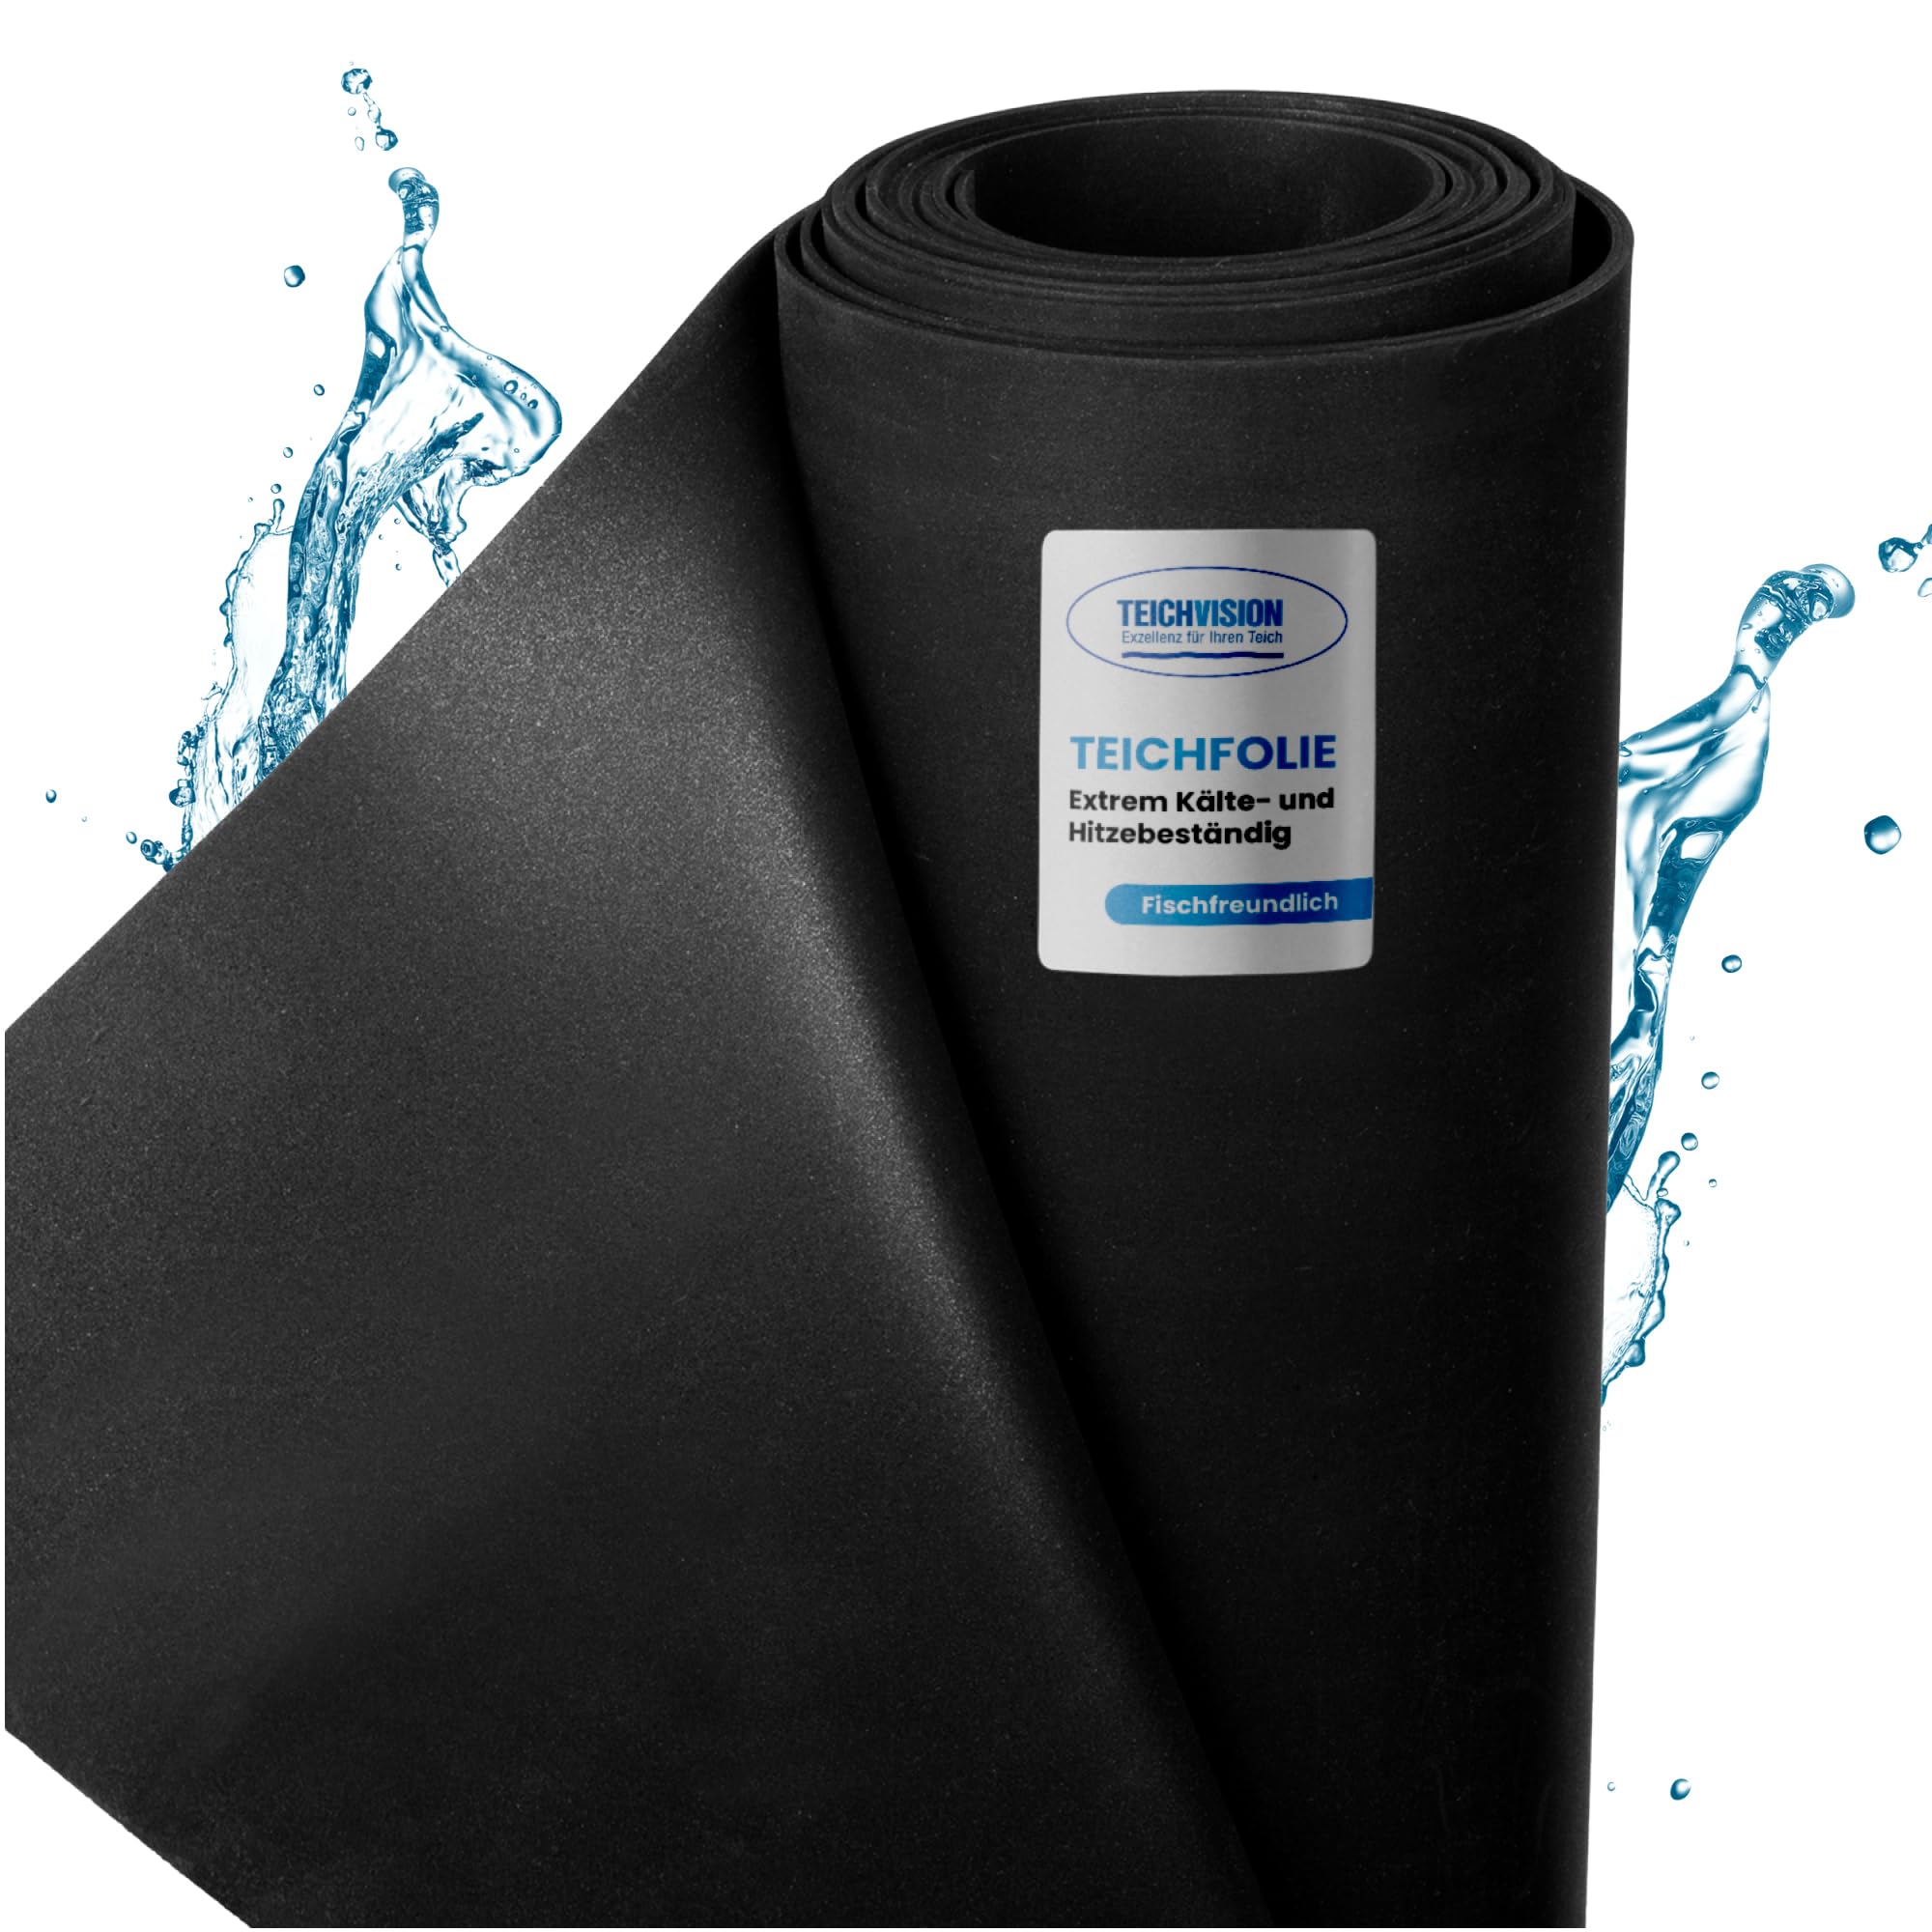 TeichVision - Premium EPDM Teichfolie Stärke 1 mm - 1,5 m x 9 m/naturgerechte EPDM Folie schwarz - besonders langlebig/auch geeignet als Hochbeet Folie wasserdicht